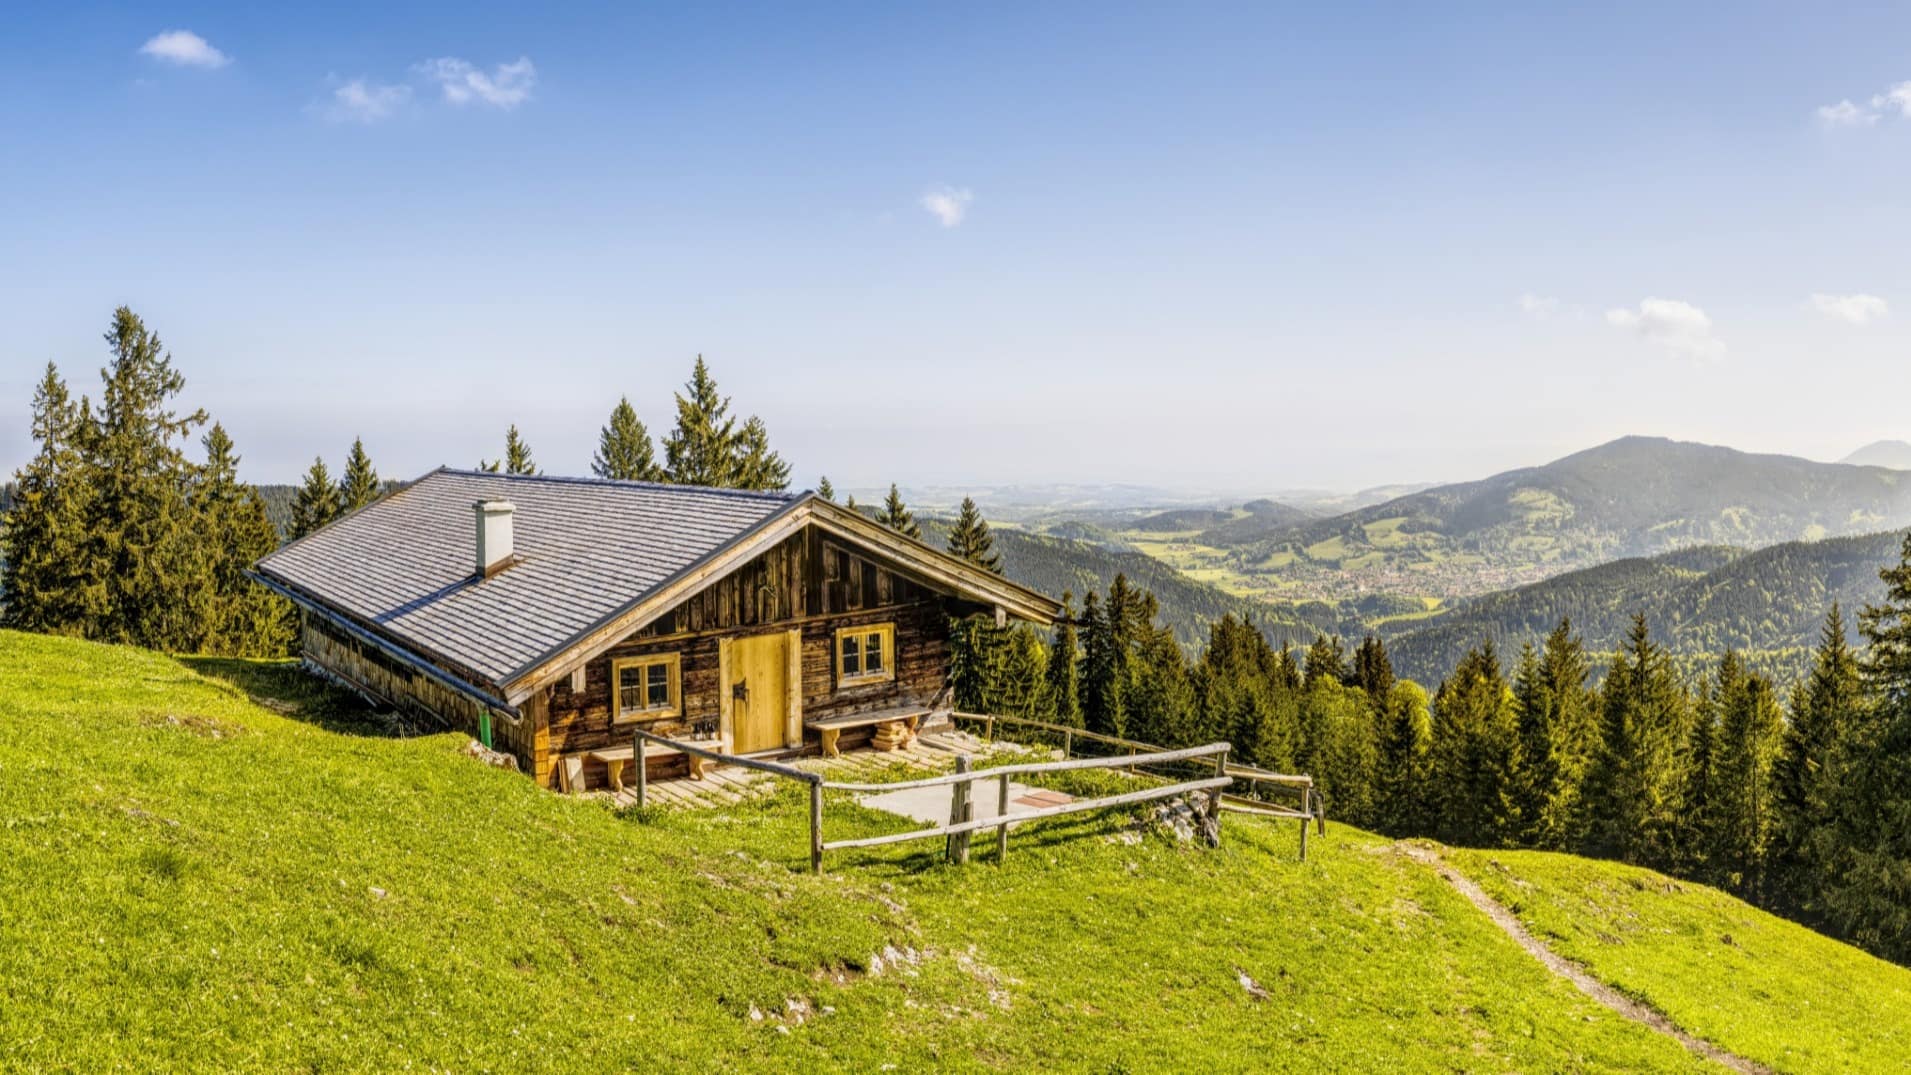 Urlaub einmal traditionell anders – eine Ferienhütte in Bayern